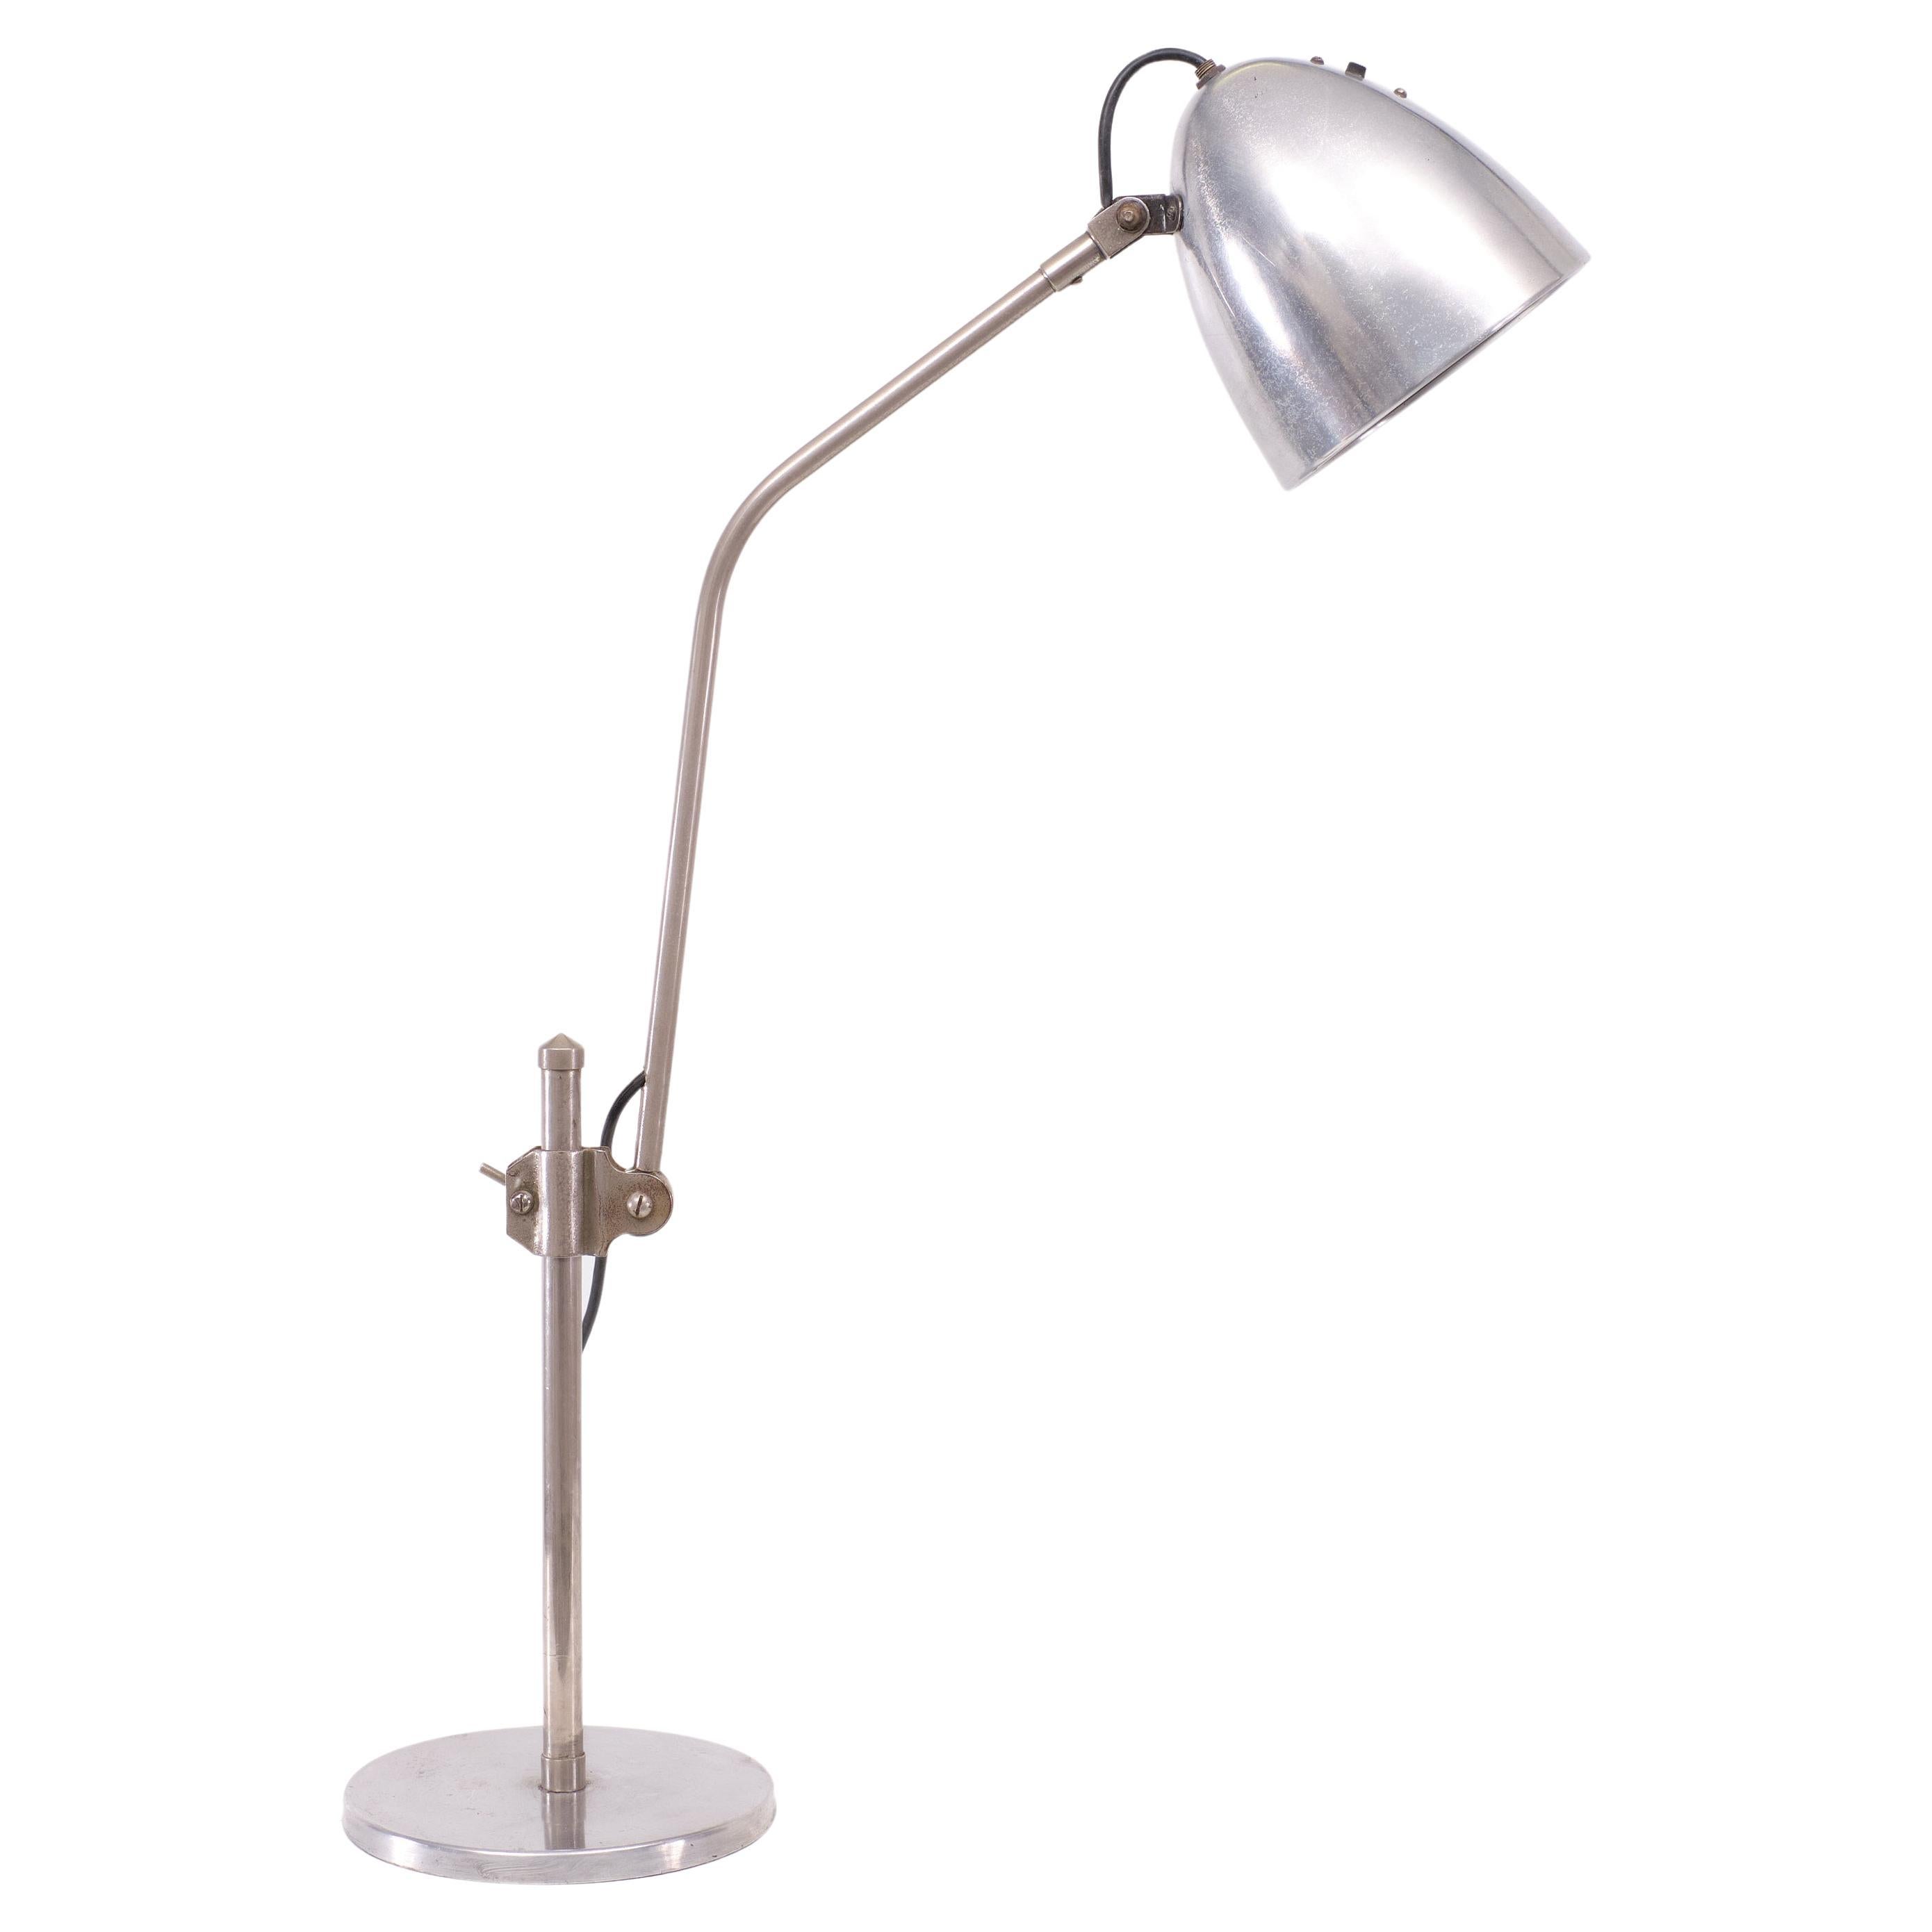 Rare lampe de travail du début du XXe siècle attribuée au designer du Bauhaus Christian Dell, en aluminium.  finition de l'abat-jour et de la base. L'abat-jour circulaire pivote sur un bras rétractable, qui à son tour peut être réglé à différents